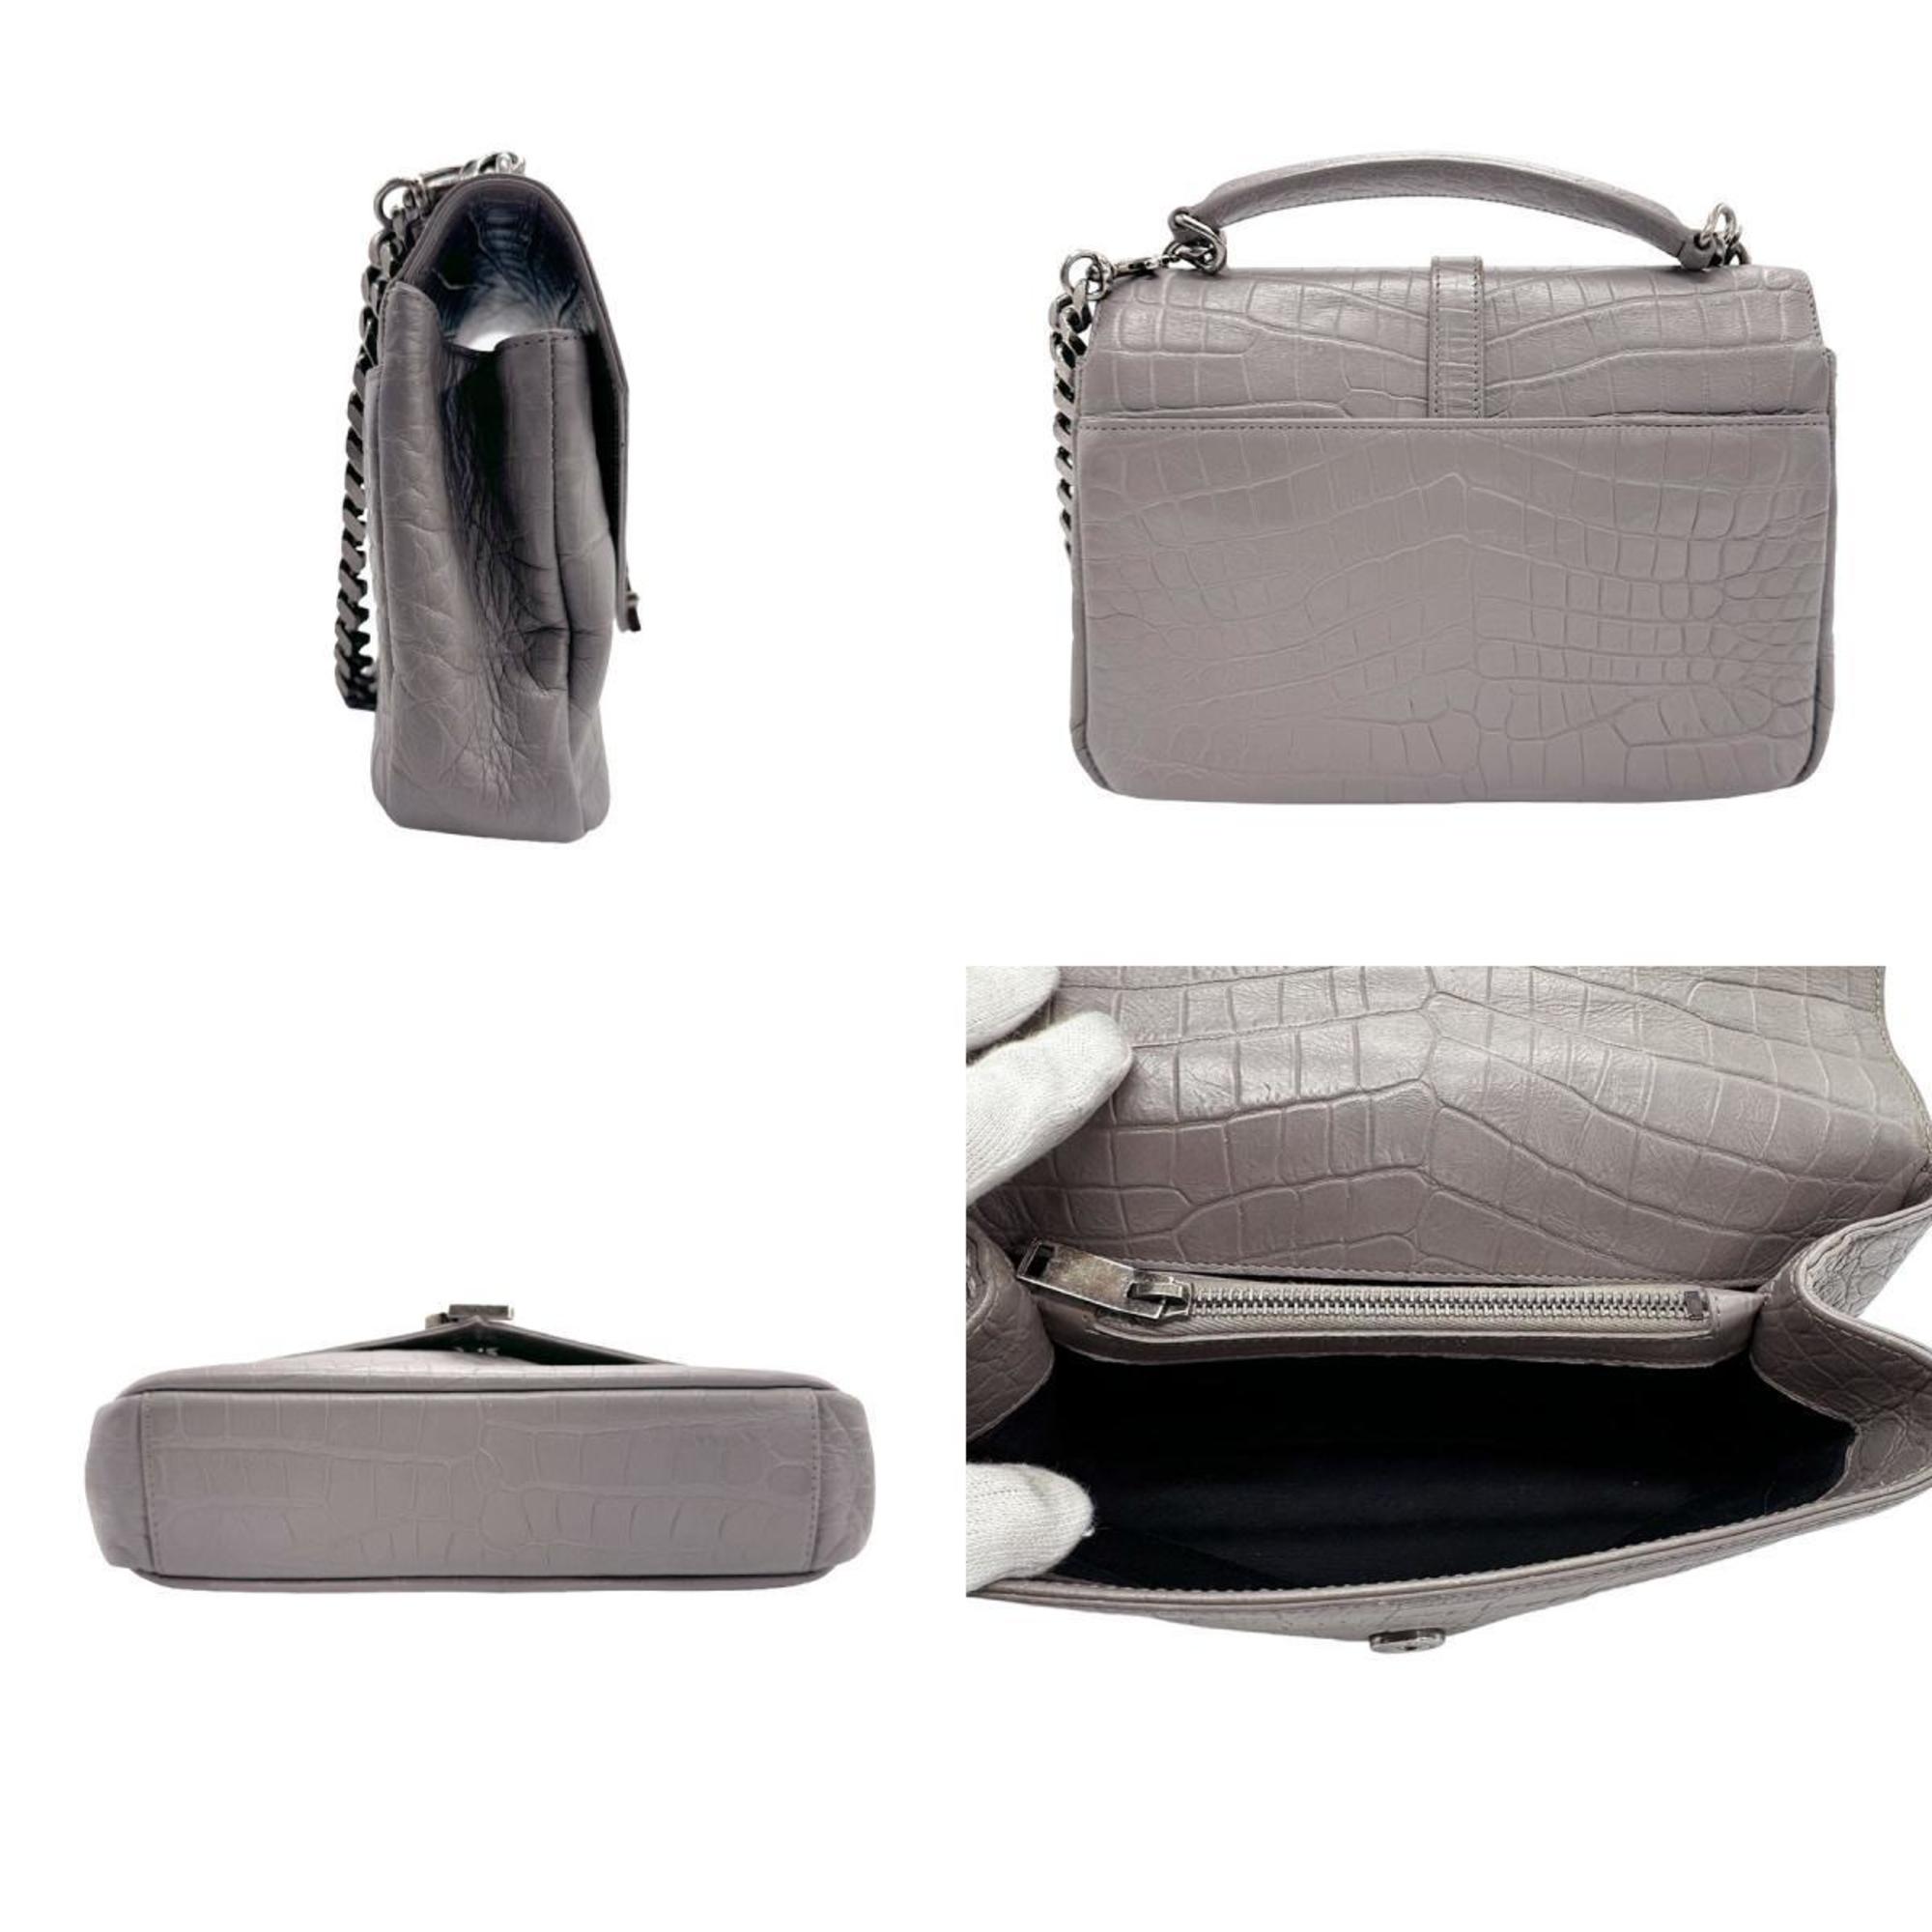 Saint Laurent shoulder bag in embossed leather, grey, for women, 428101 z1385